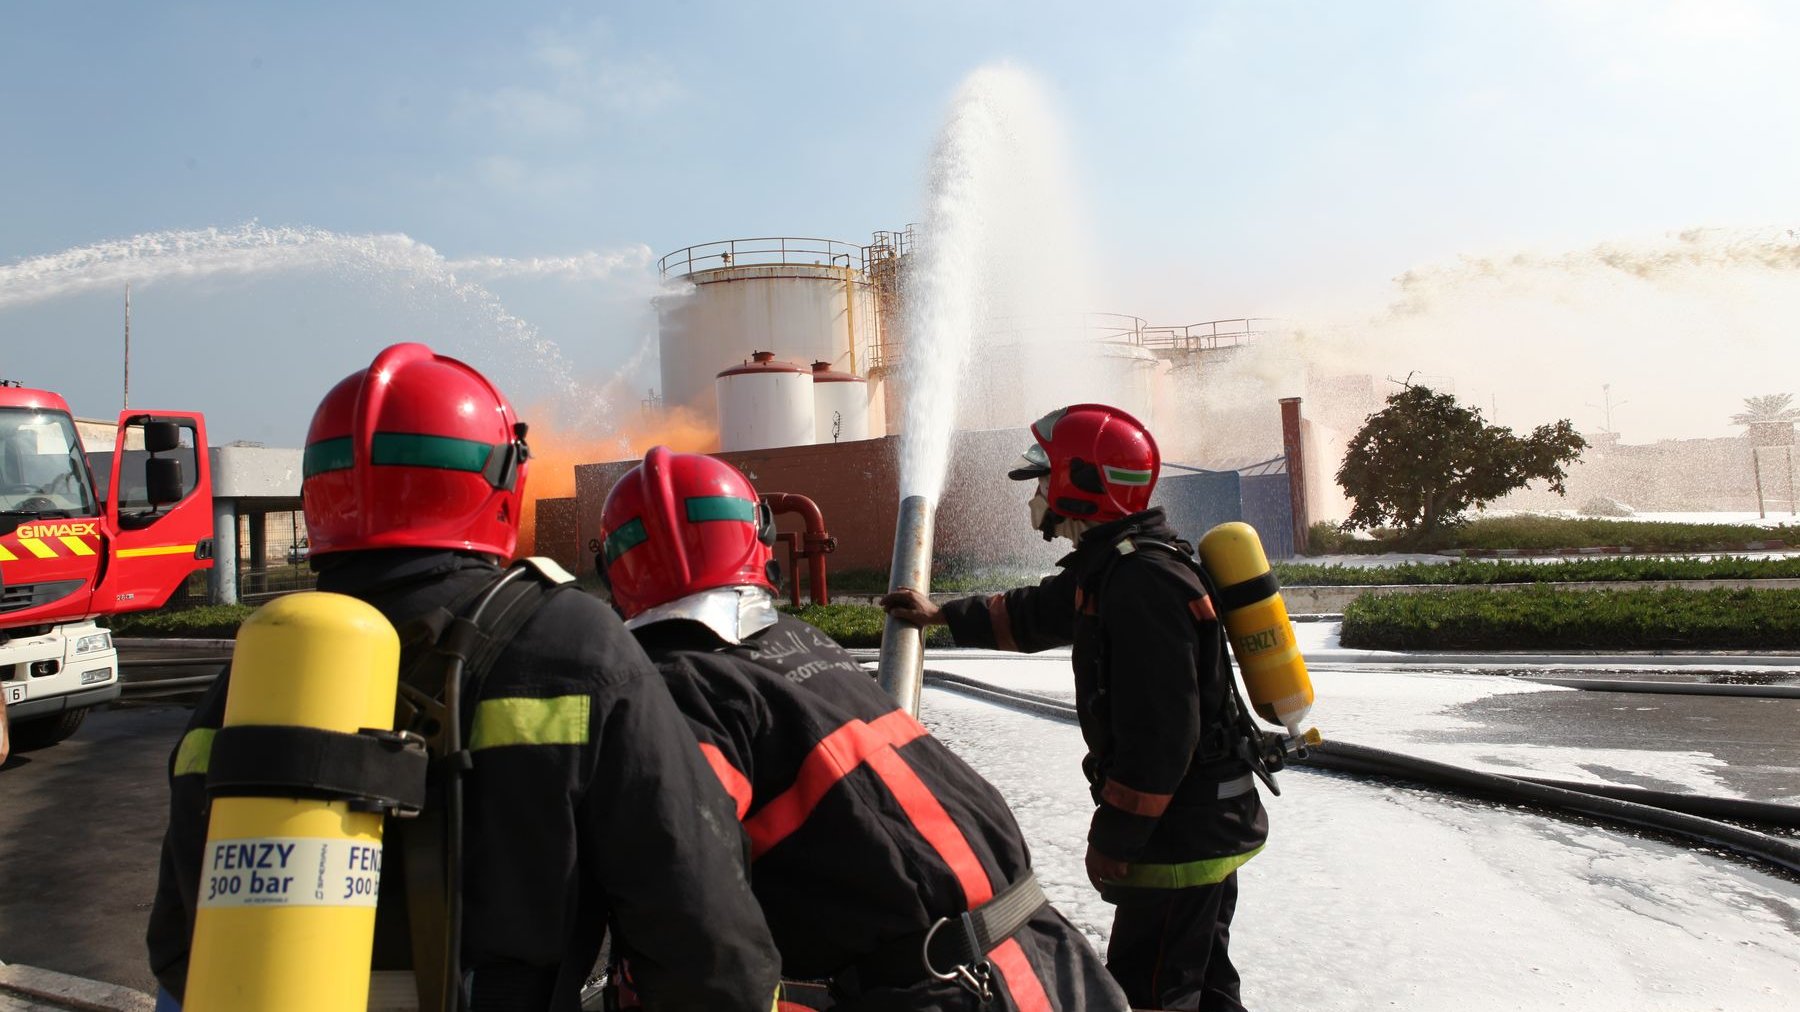 Pompier : un travail d'équipe qui demande coordination, concentration et bravoure
